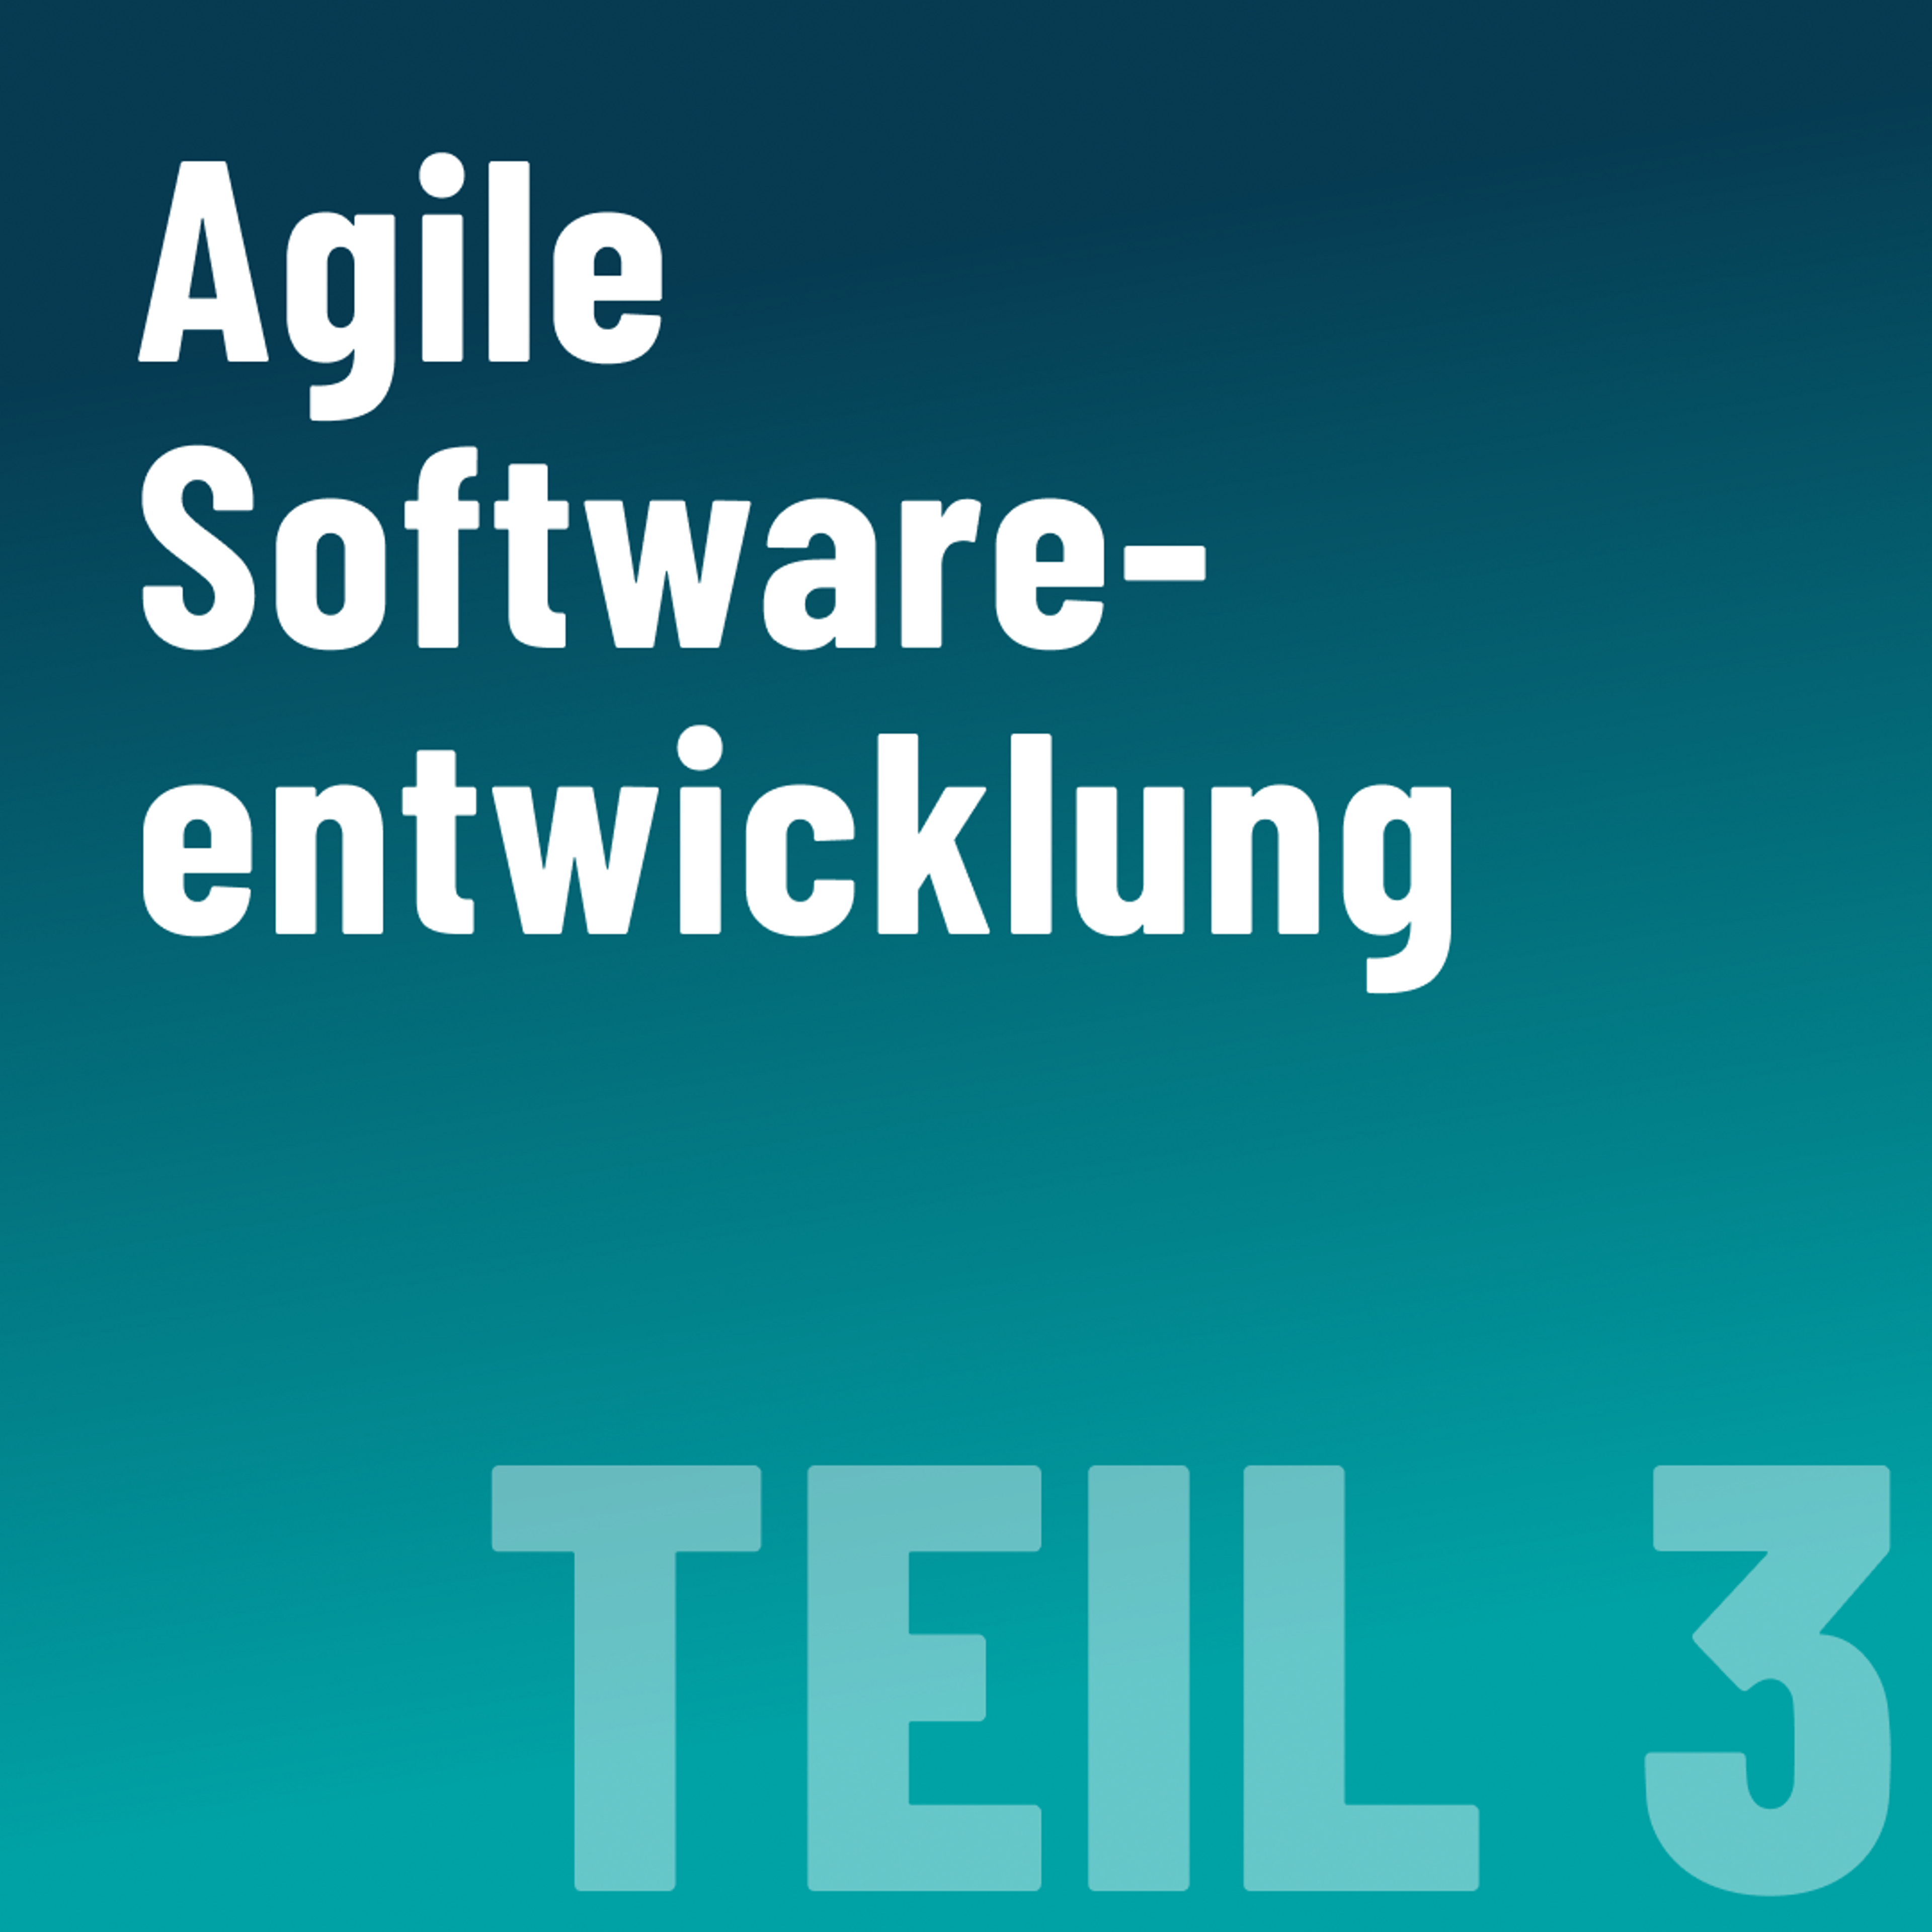 Teil 3: Wie agile Softwareentwicklung funktionieren kann